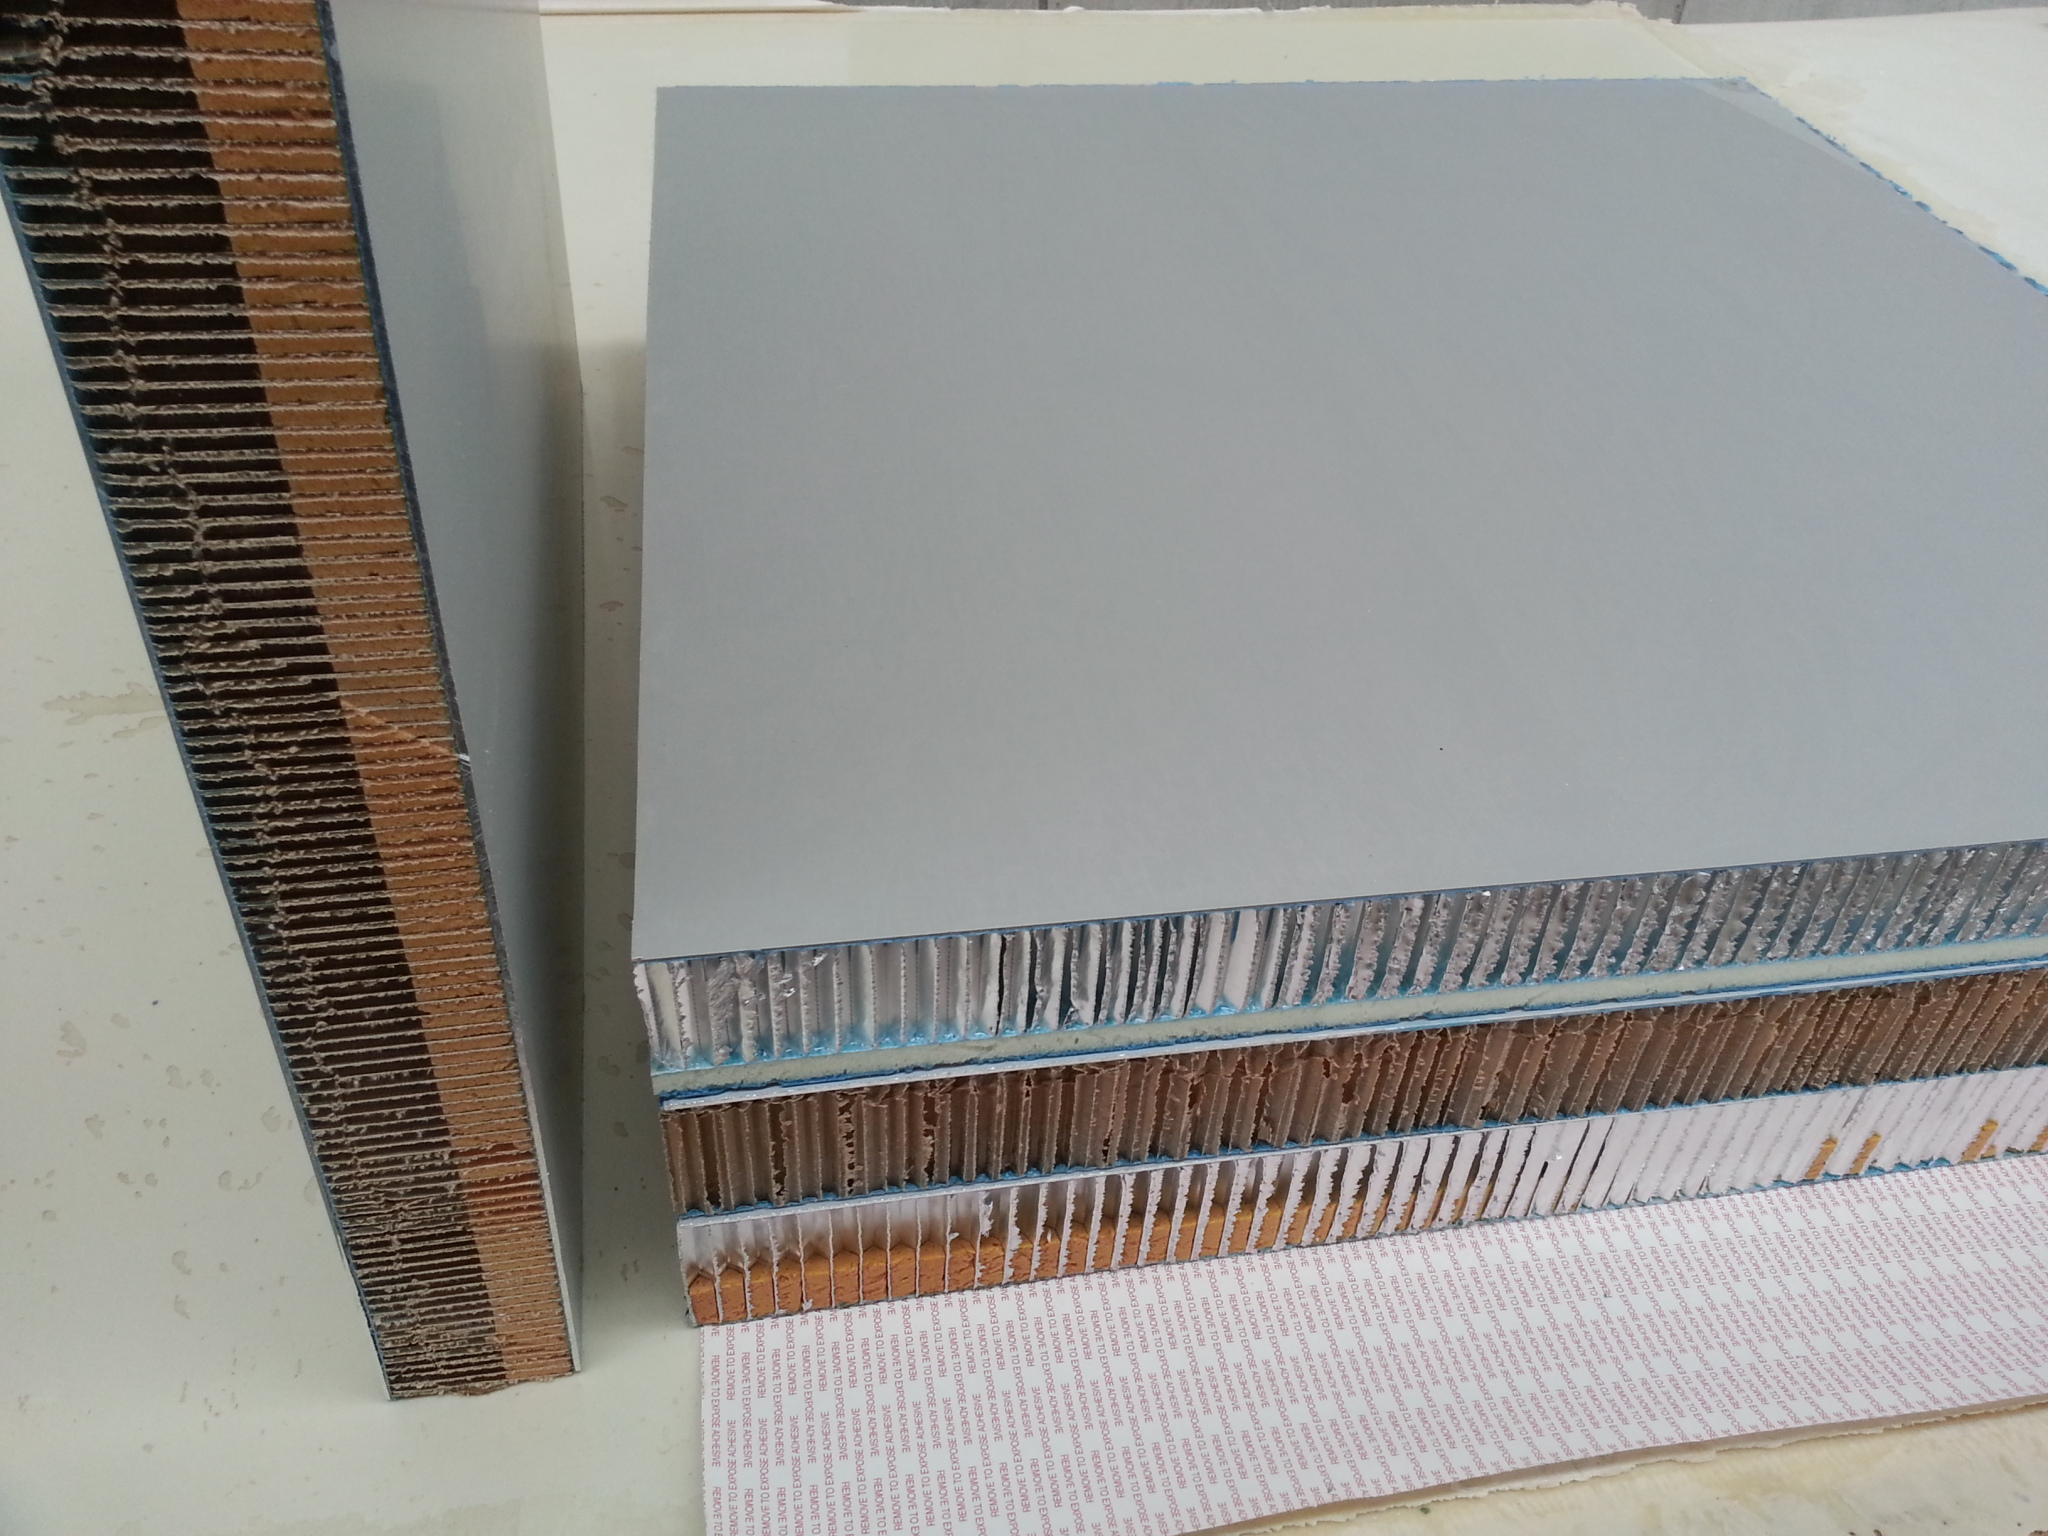 供应铝蜂窝板 直销铝蜂窝板 铝蜂窝板厂家 铝蜂窝板报价 铝蜂窝板哪家好图片